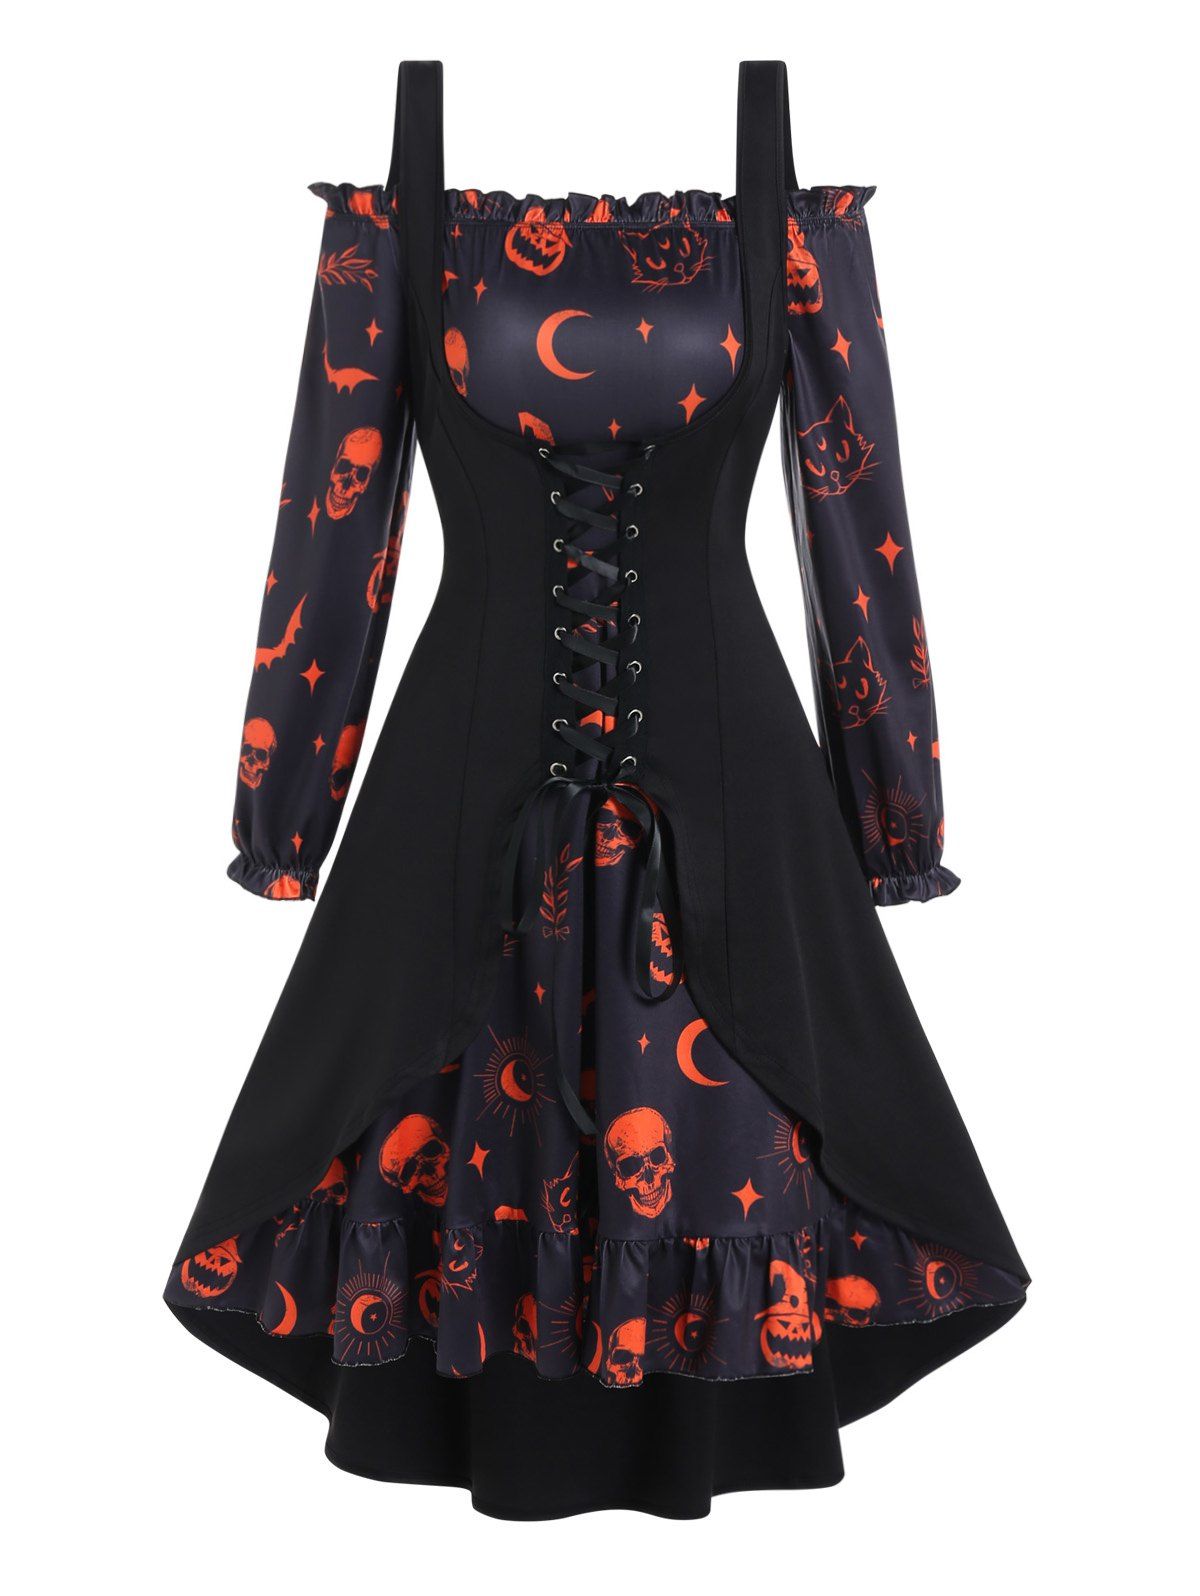 Pumpkin Skull Bat Cat Print Ruffle A Line Mini Dress And Lace Up Slit Tank Top Halloween Gothic Set - BLACK XXXL